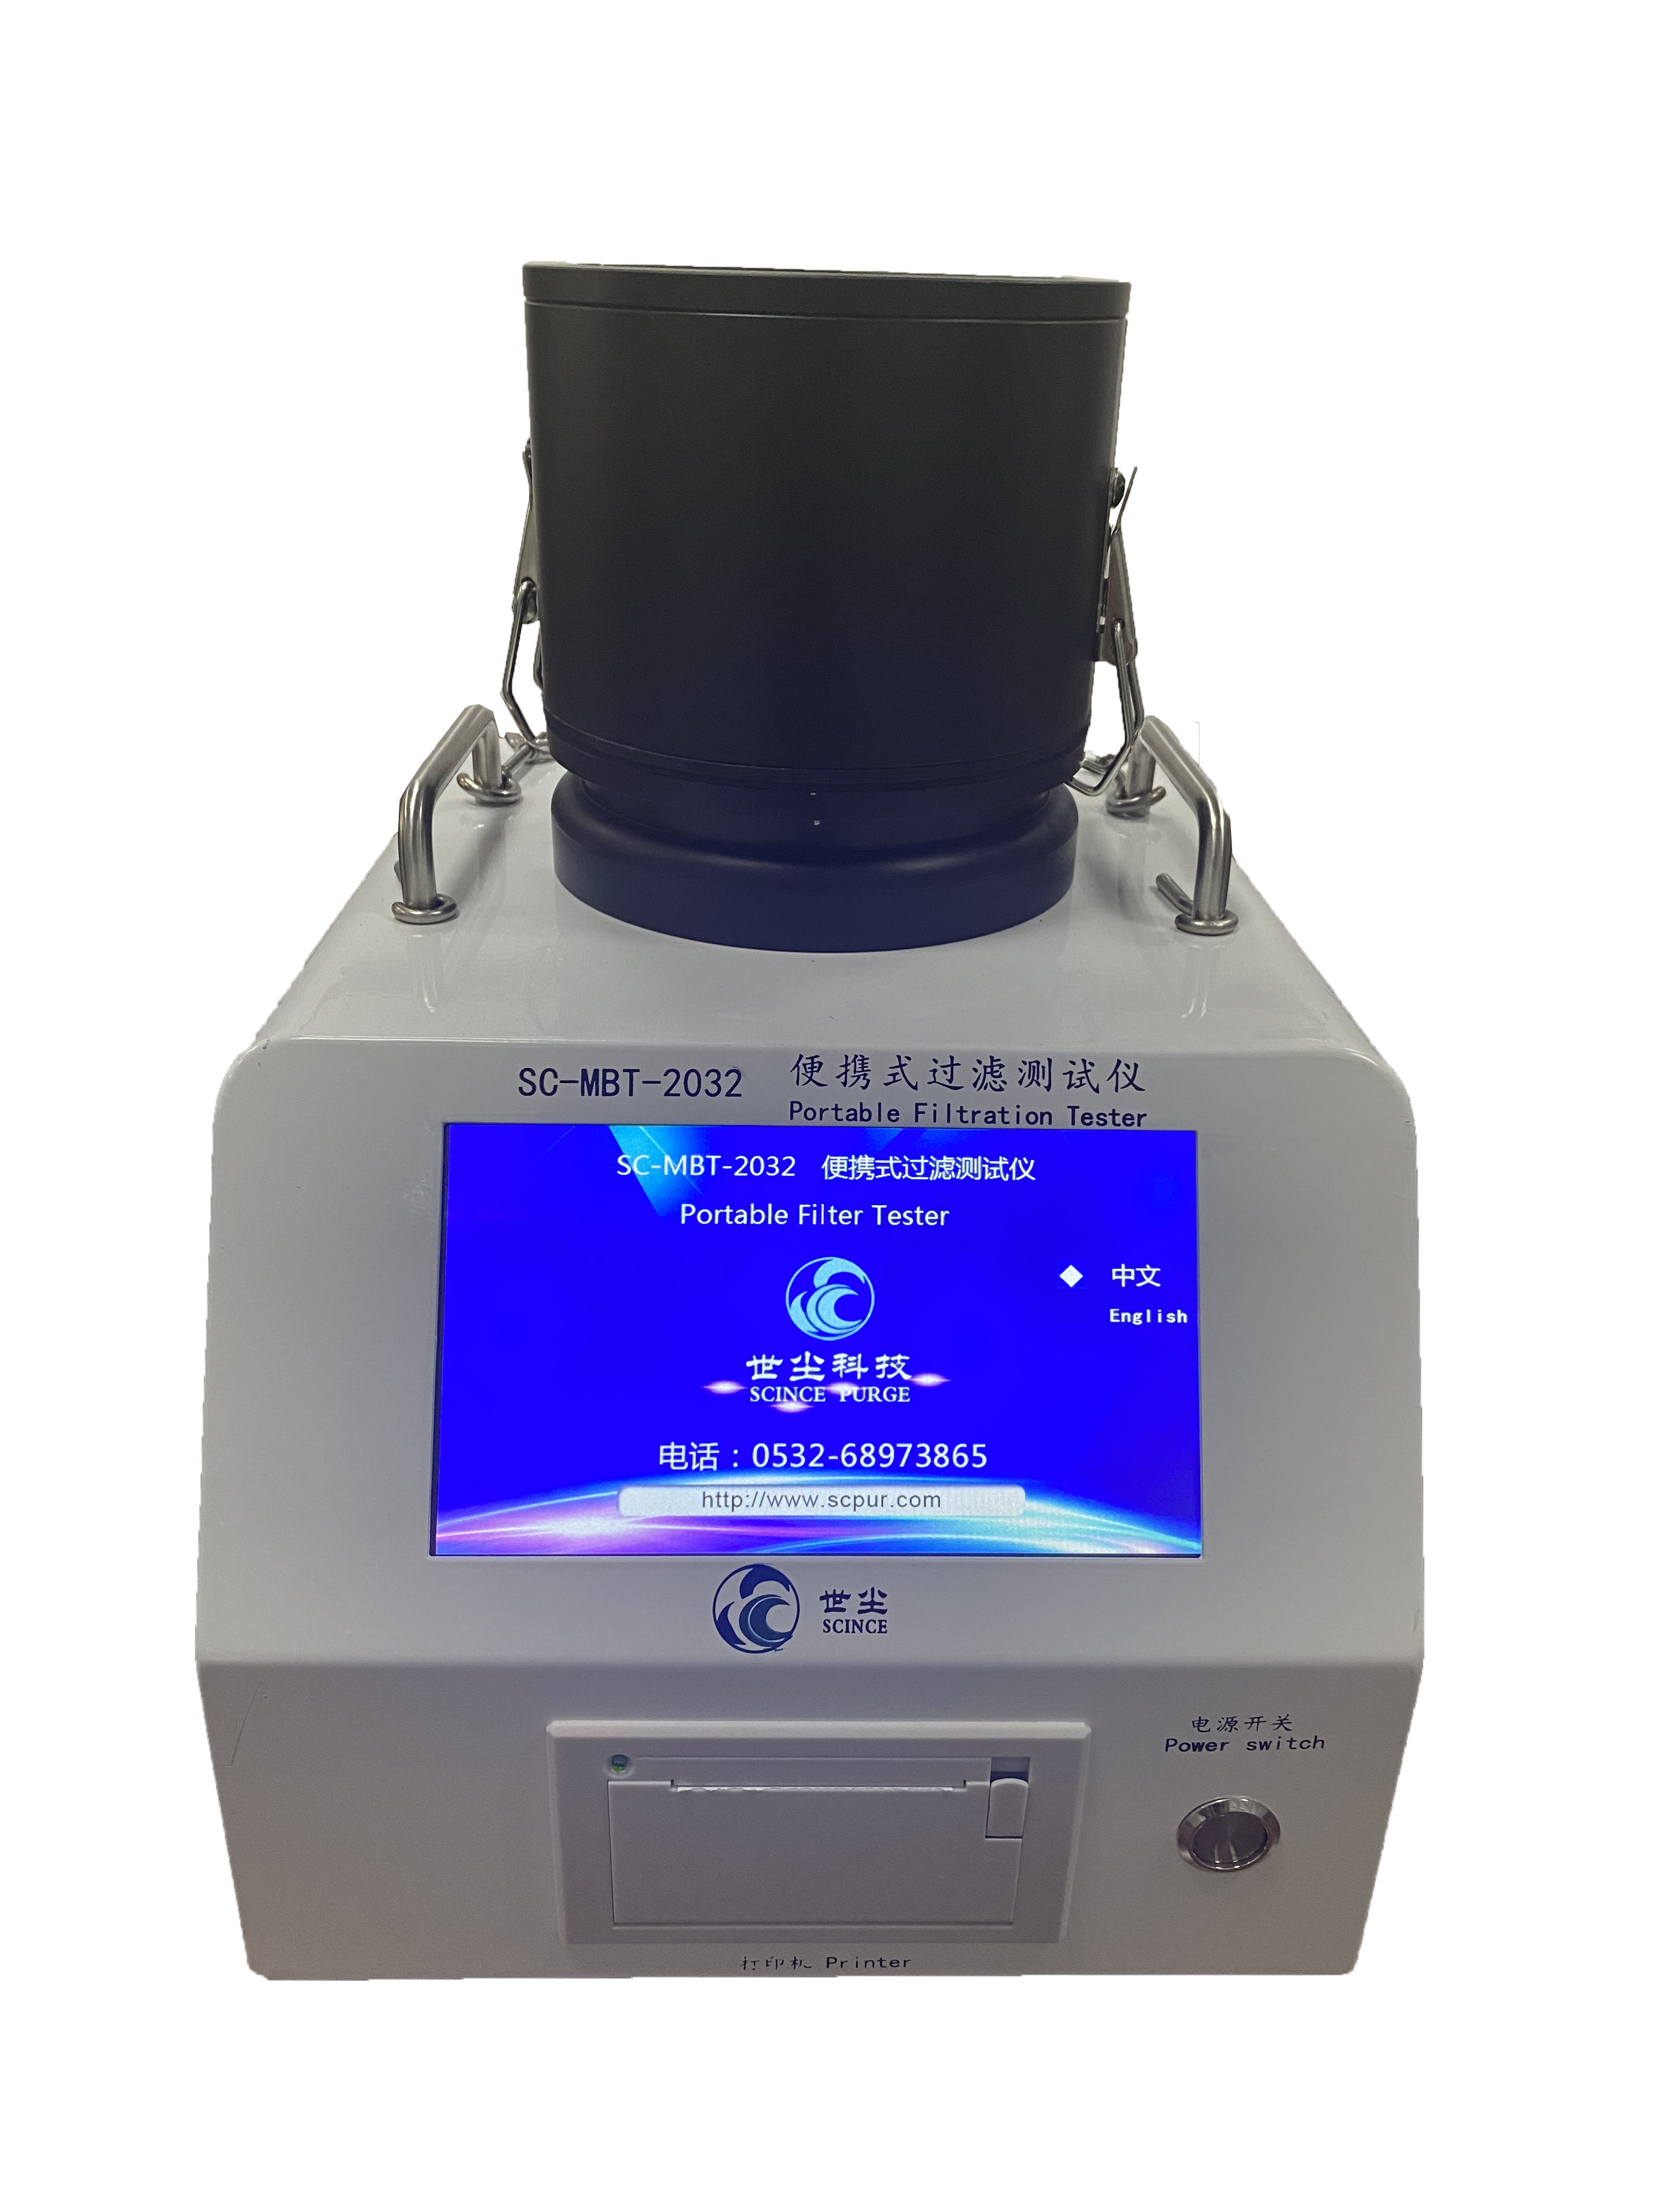 معدات اختبار المواد المنفوخة بالذوبان المحمولة جهاز اختبار قناع الوجه SC-MBT-2032